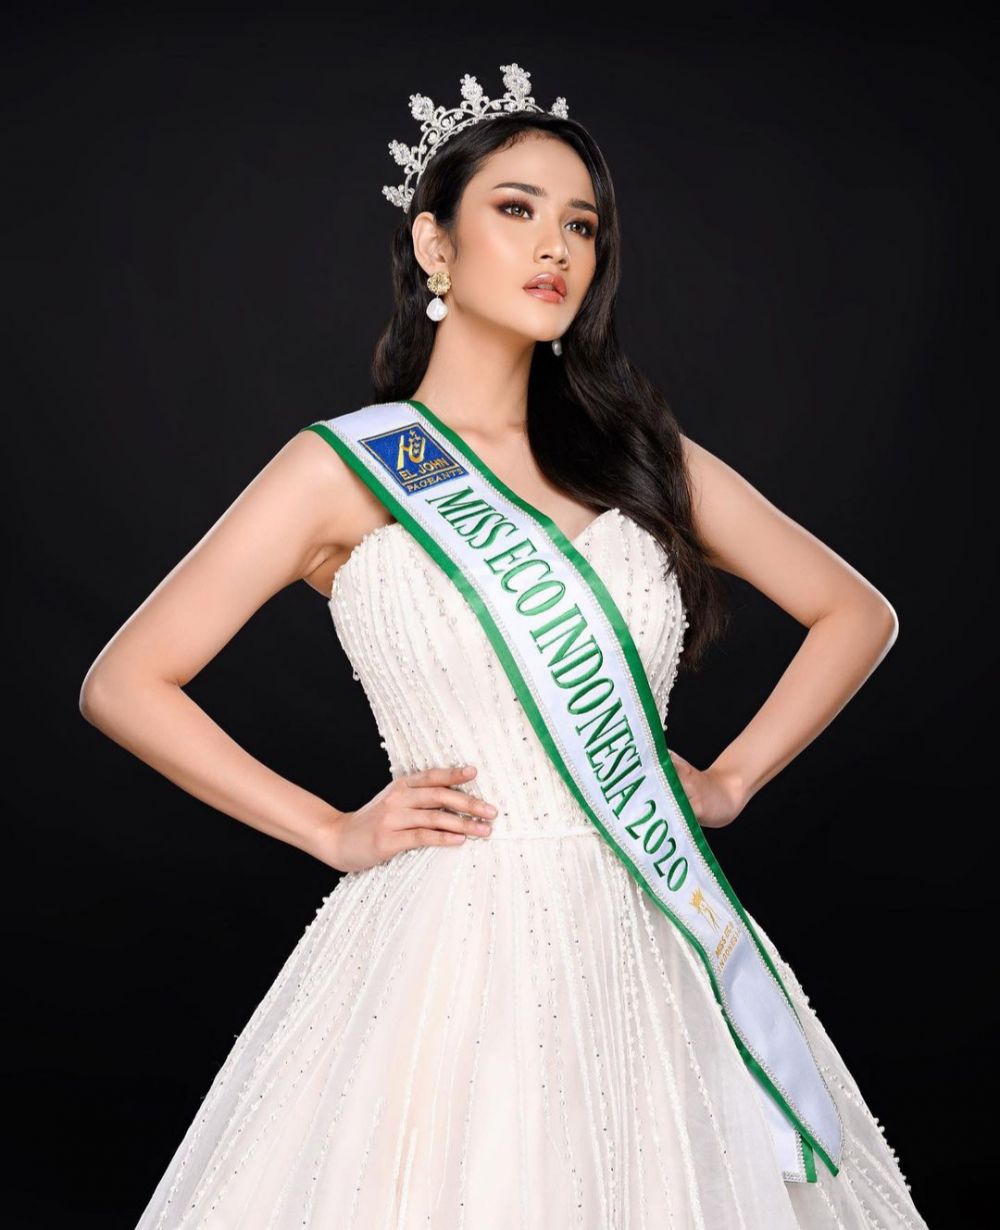 8 Potret Intan Wisni, finalis Miss Eco Internasional yang jadi sorotan